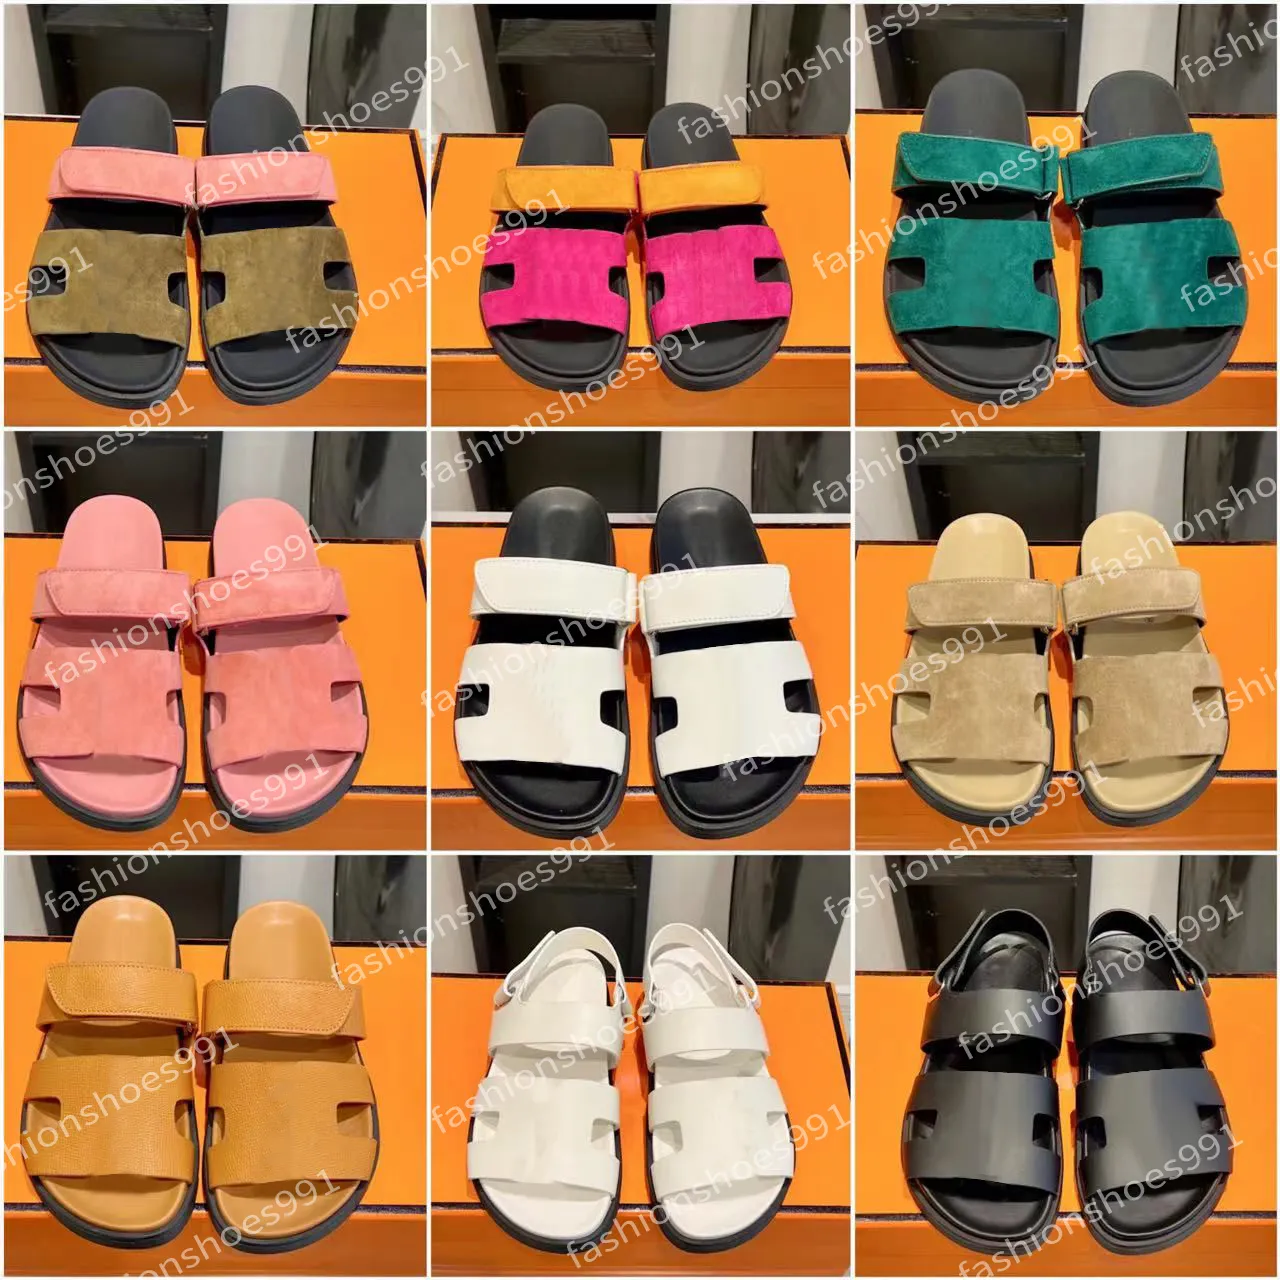 Designer Sandaler Platform Slides Women Sandale Men tofflor Skor Botten päls flip flops Summer Casual Sandal Real Leather Top Quality With Box 10A